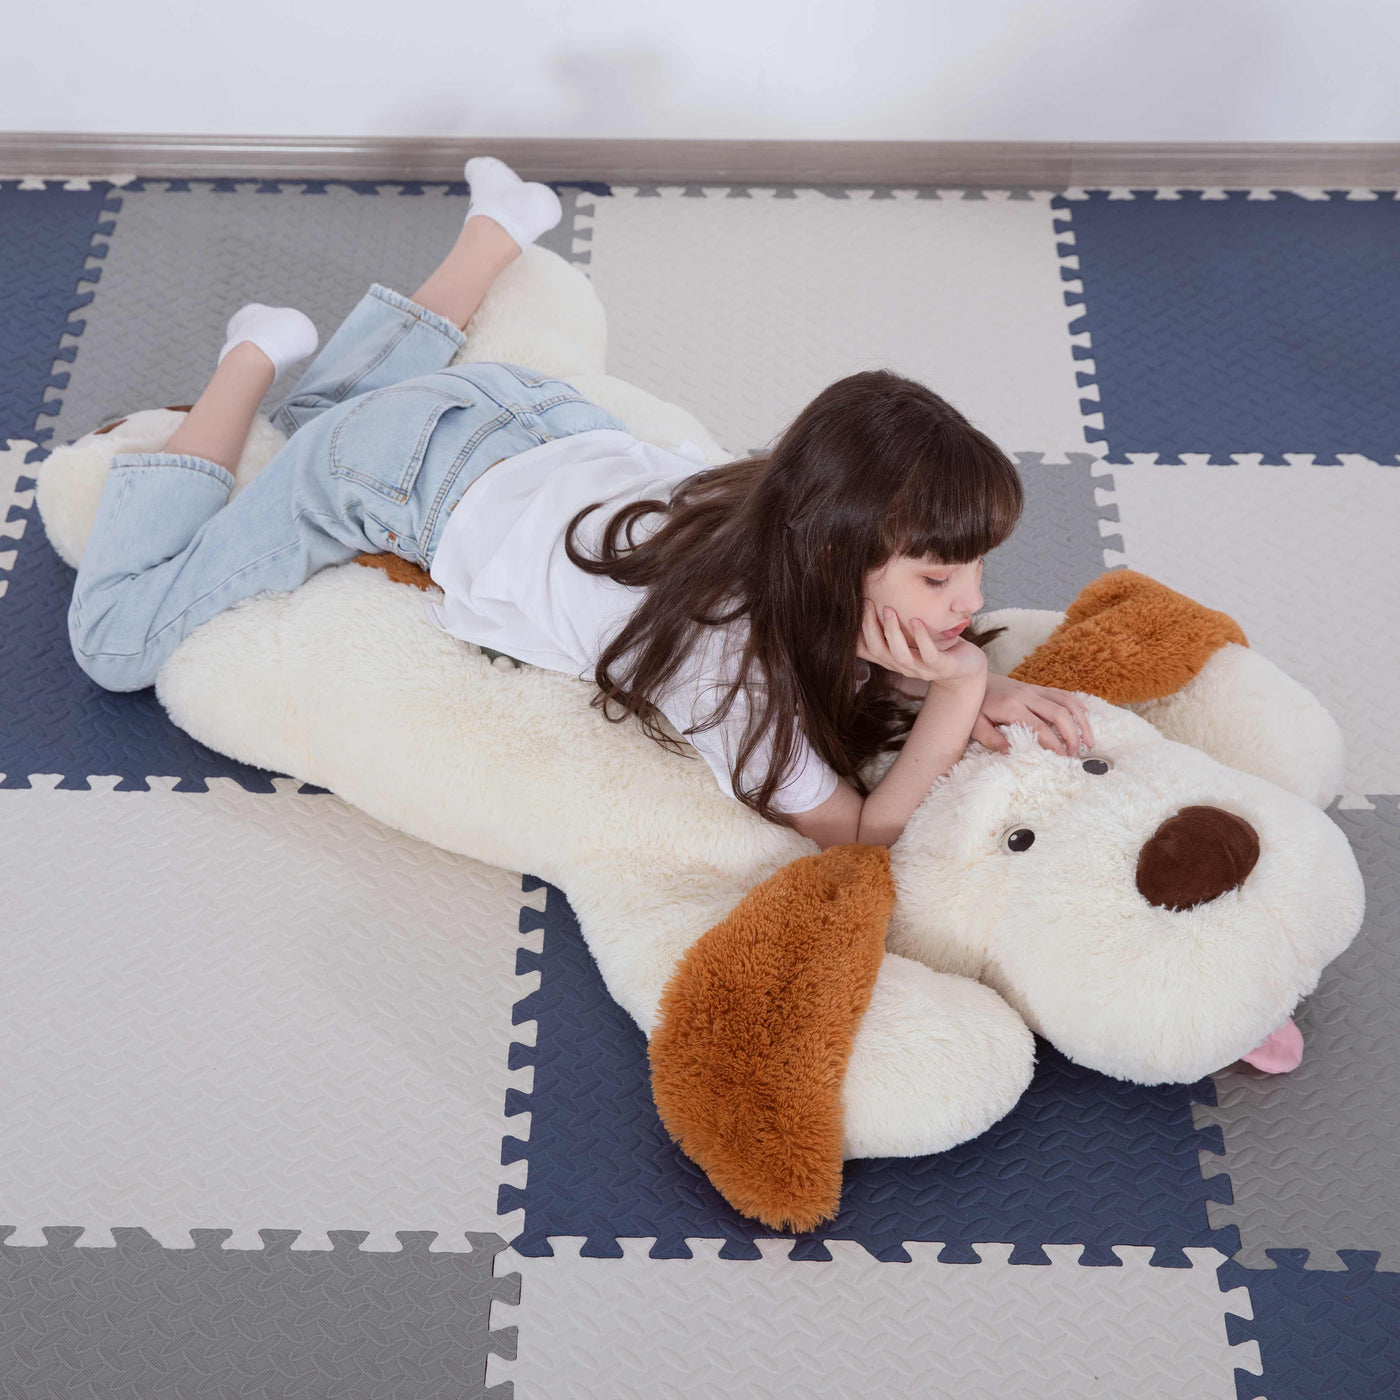 MorisMos Giant Dog Stuffed Plush Toy, Brown/White/Pink